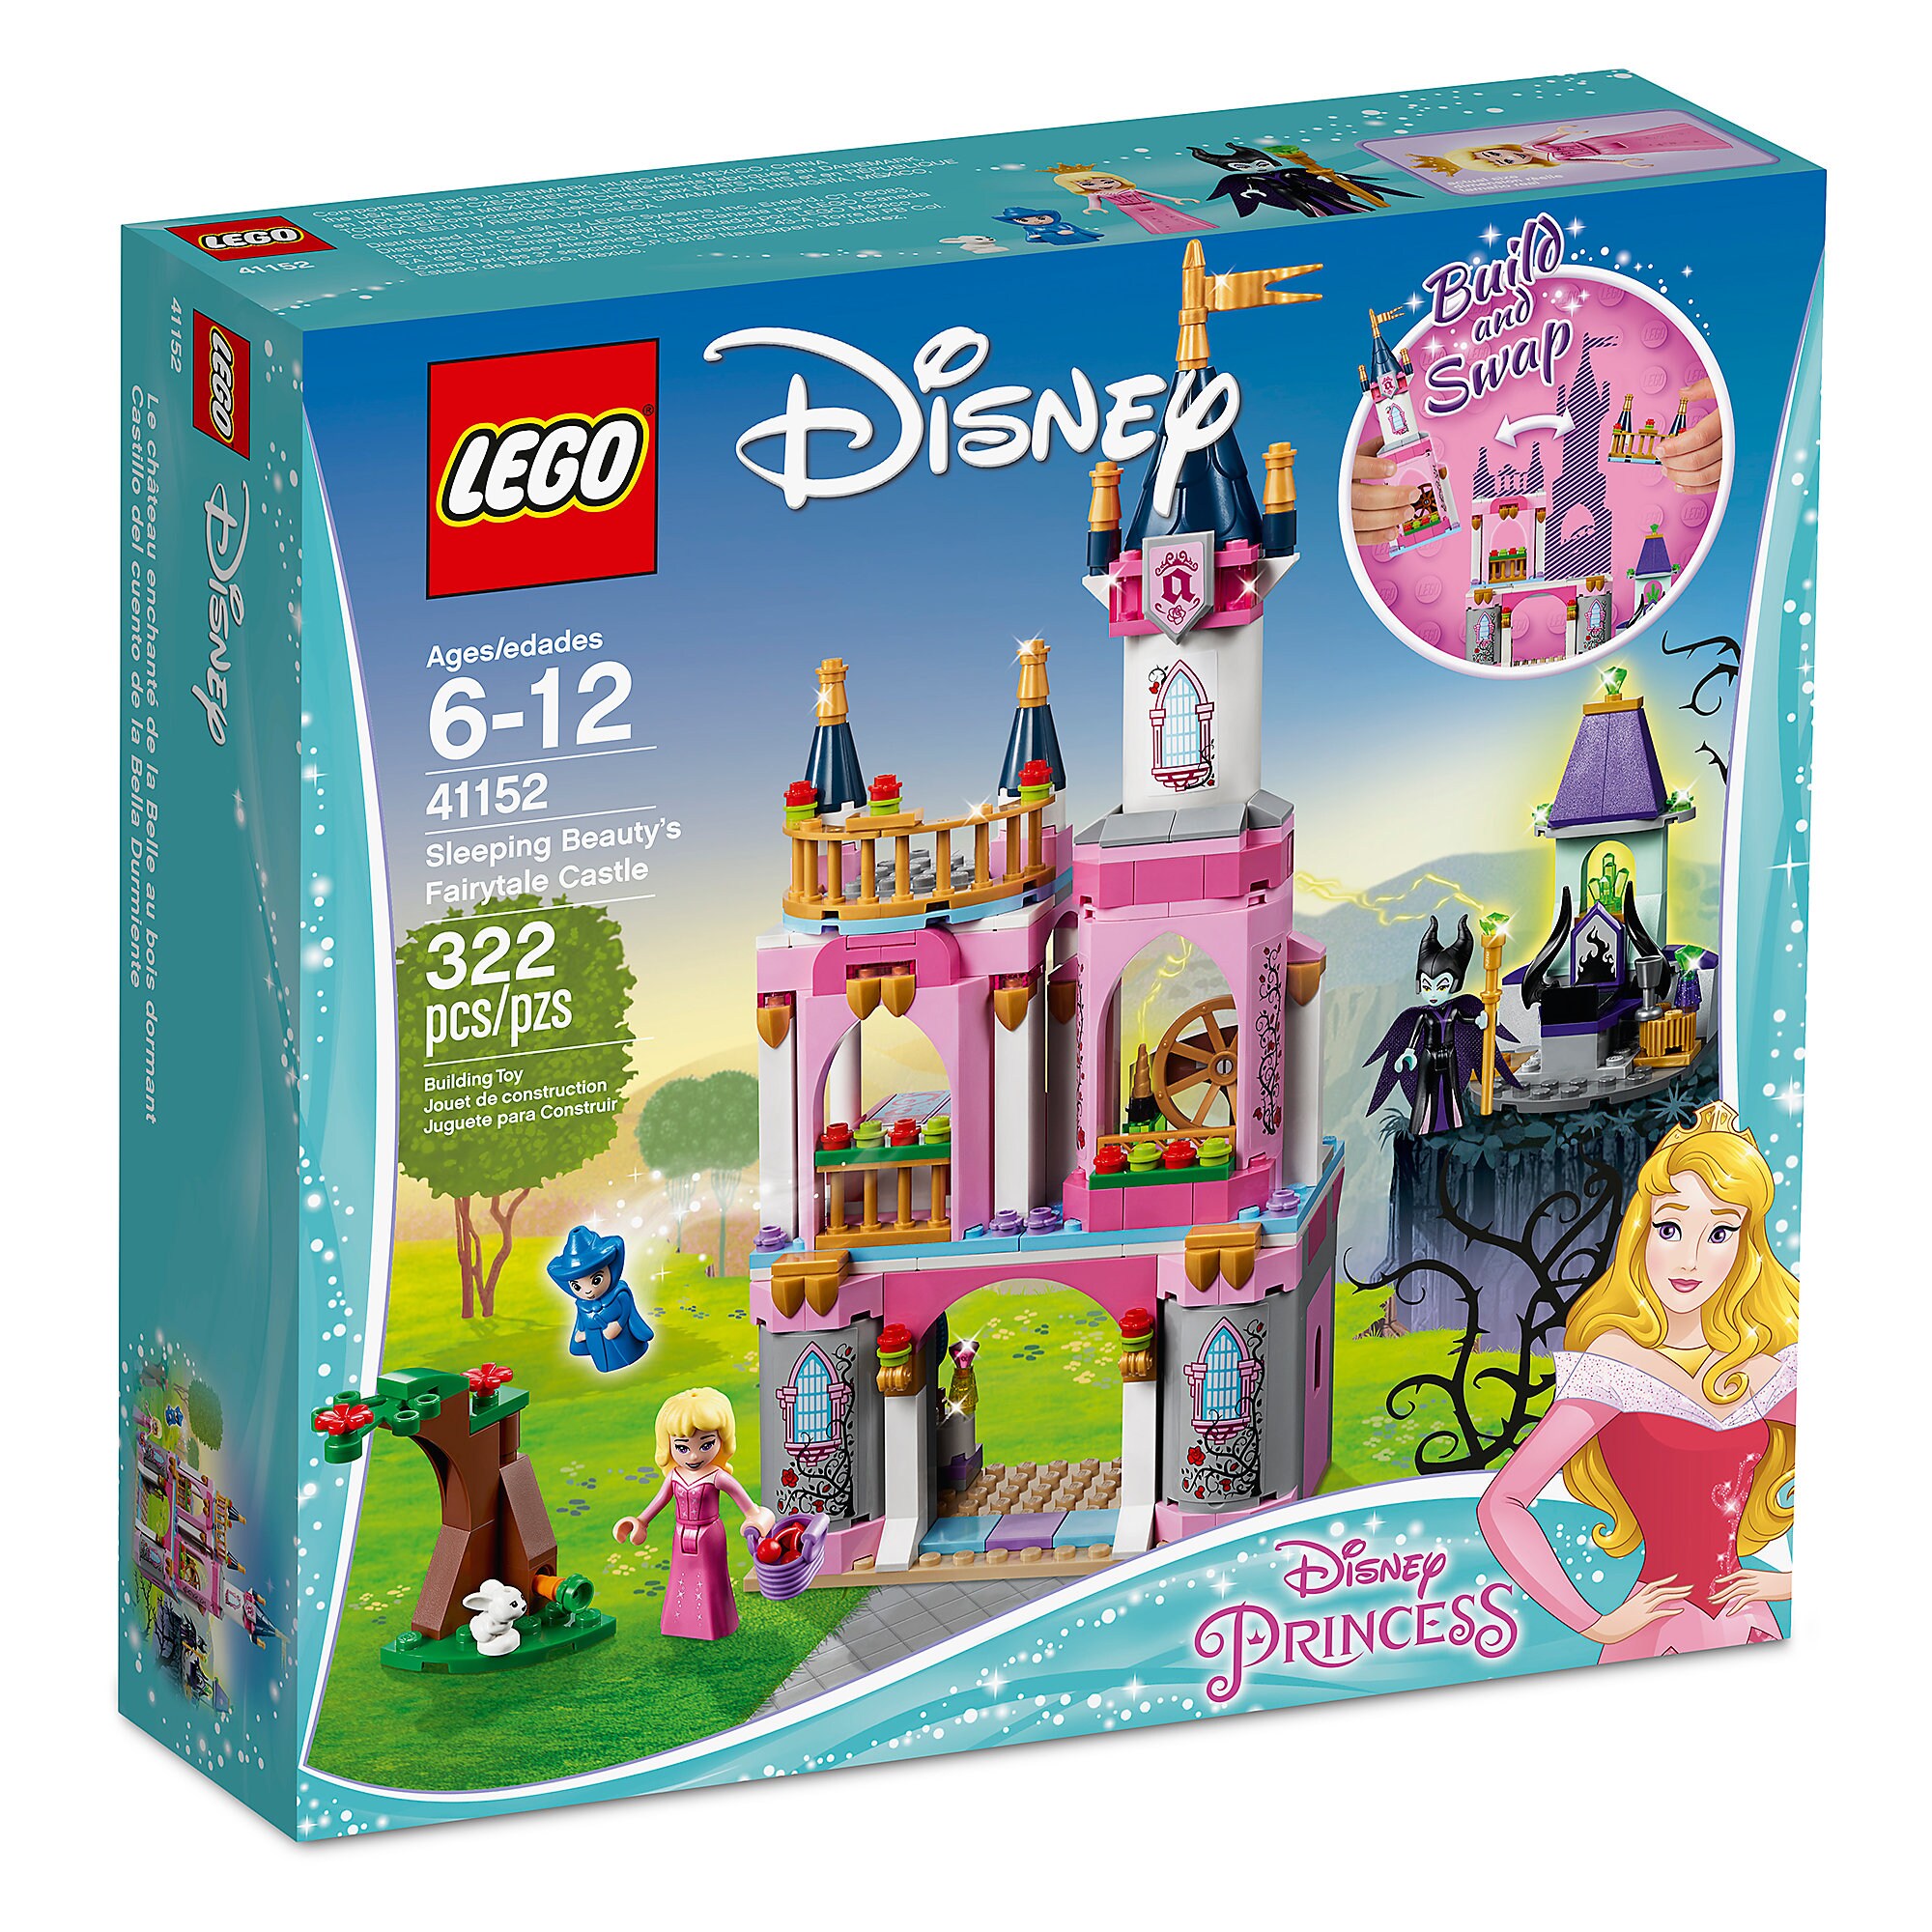 Sleeping Beauty Fairytale Castle Playset by LEGO